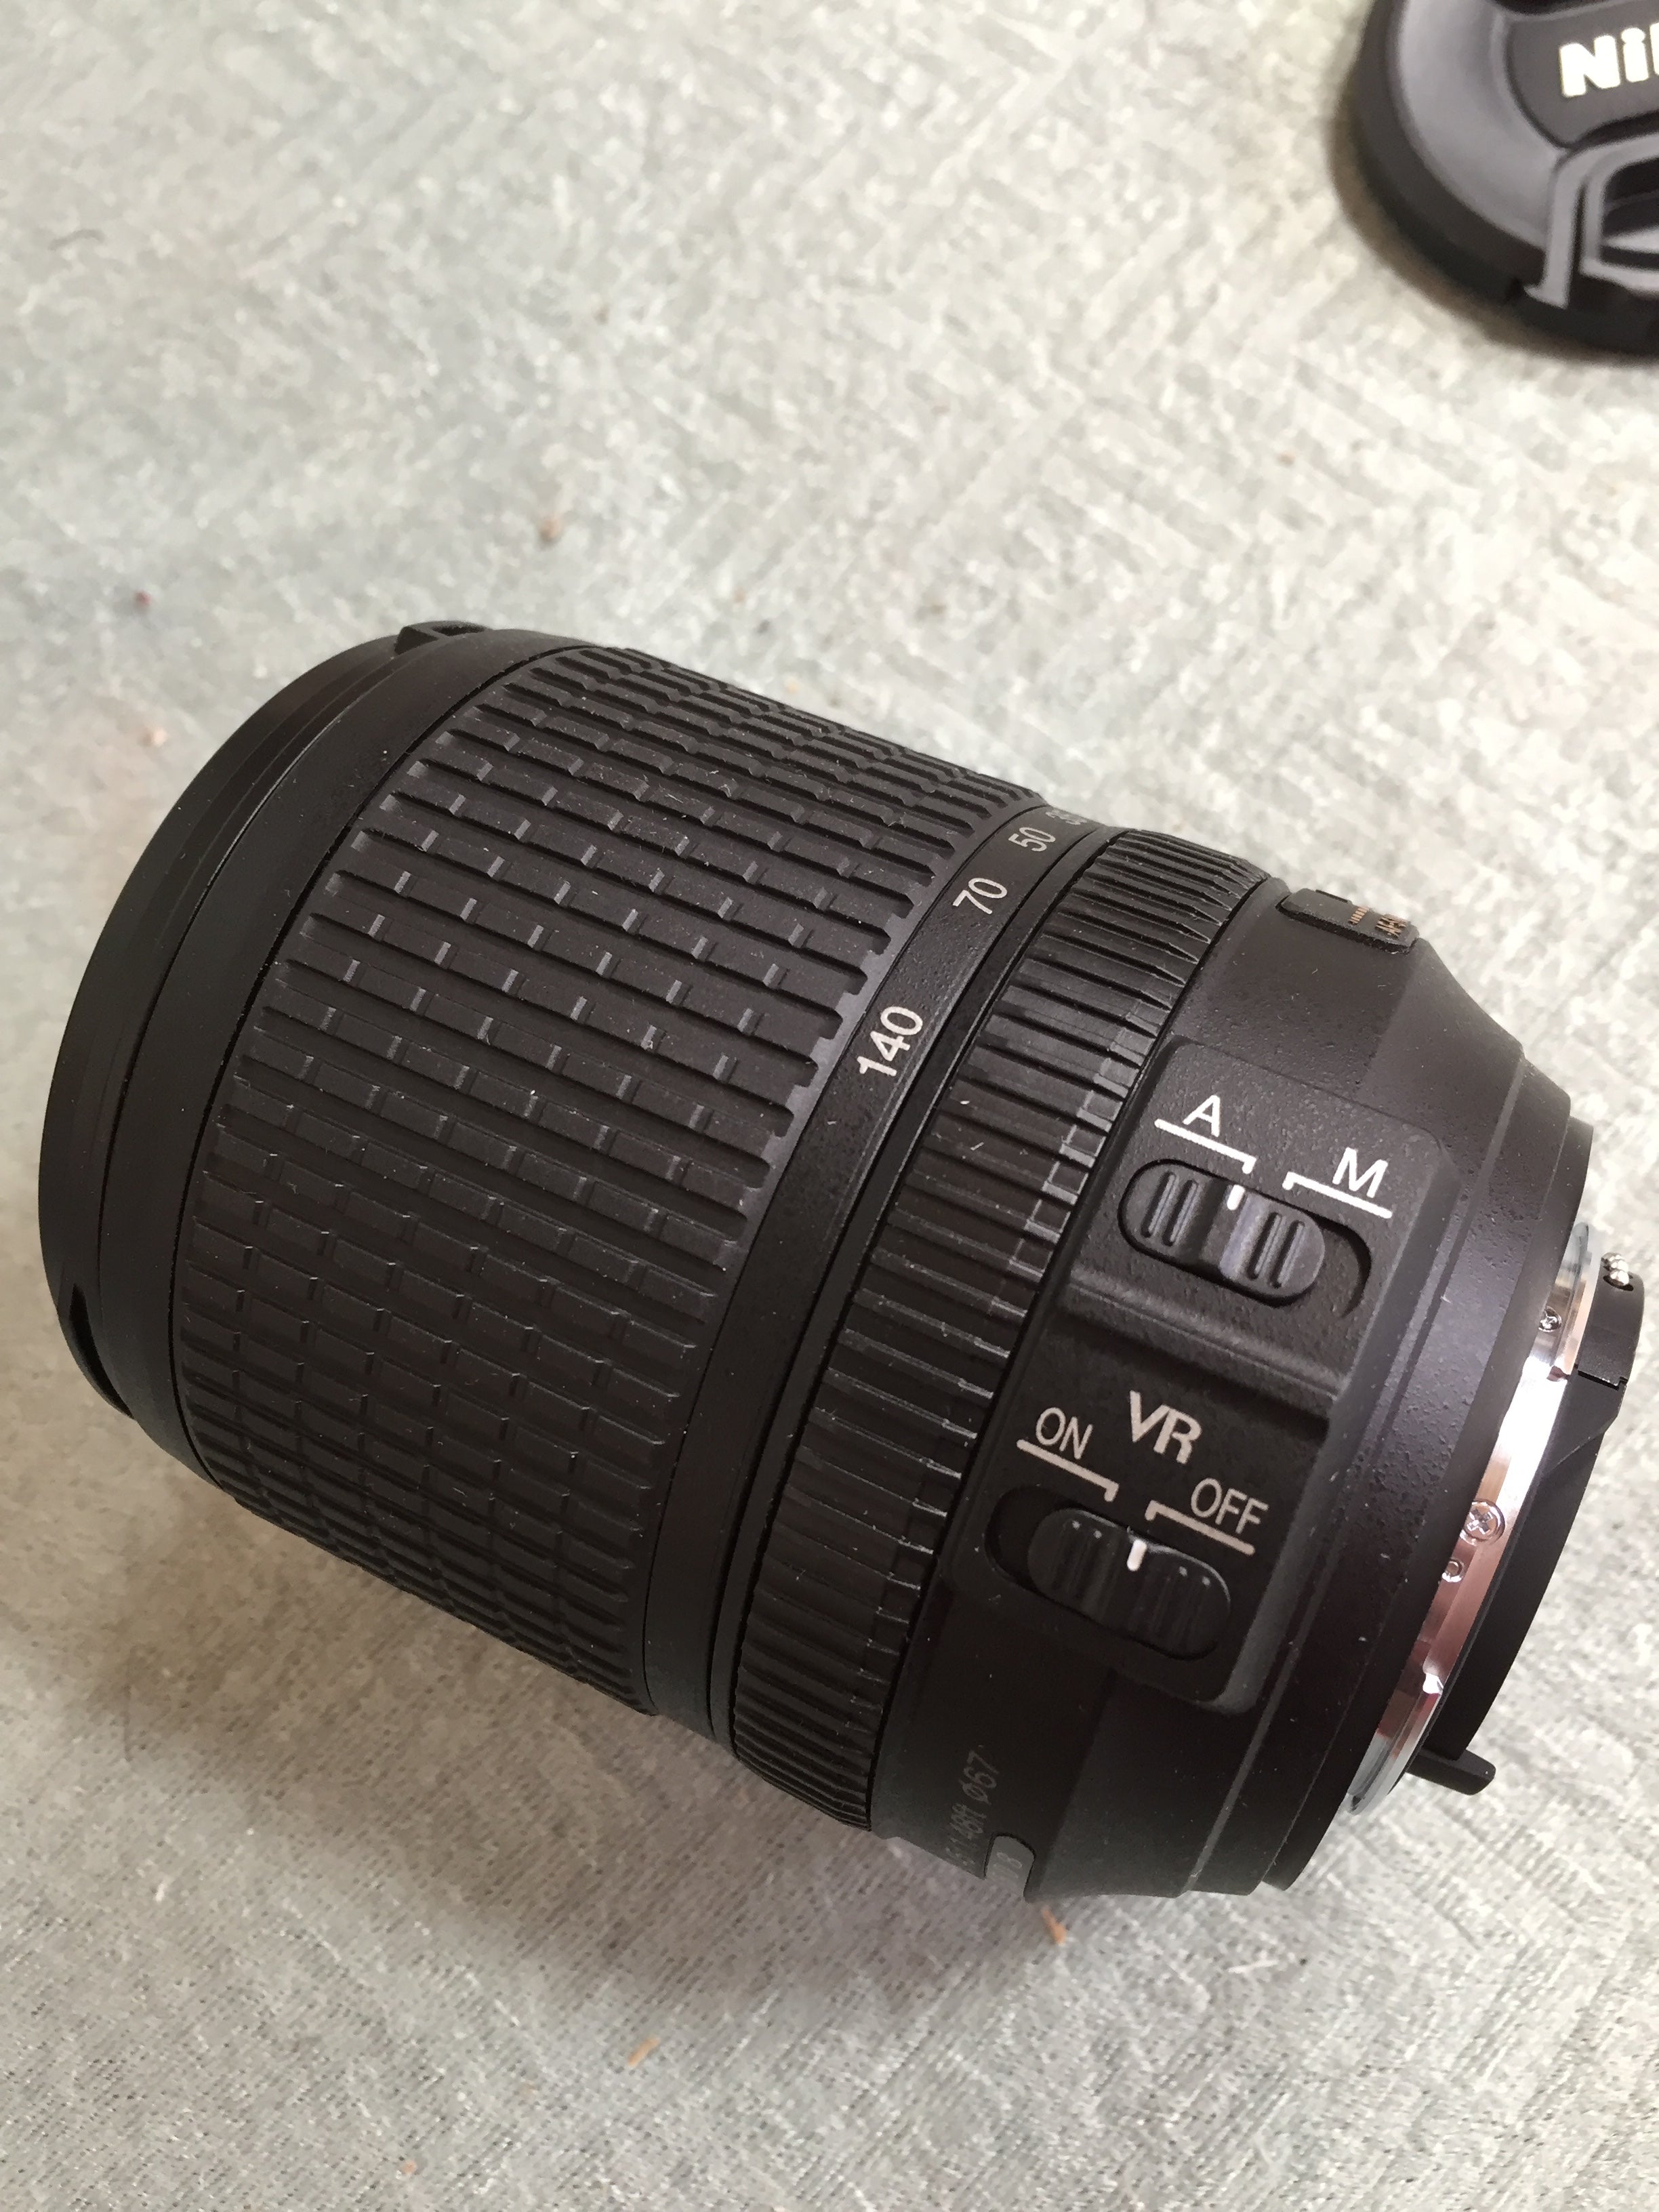 Nikon Nikkor Lens AF-S DX Nikkor 18-140mm f/3.5-5.6G ED VR (7614769234158)